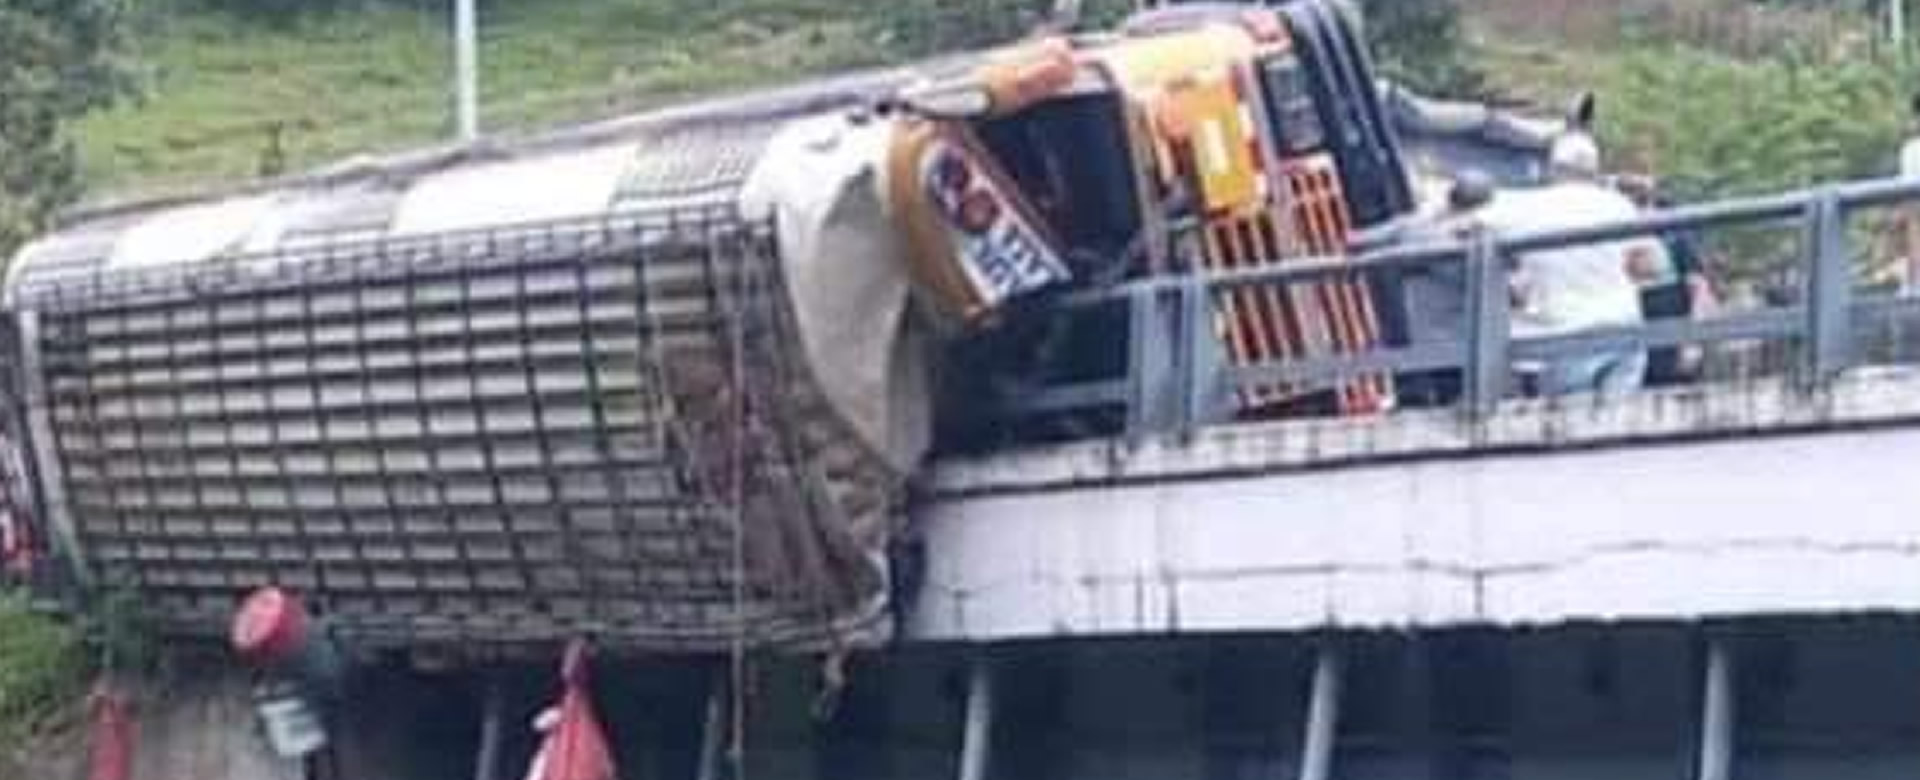 Policía capturó al conductor del bus del accidente en el puente Mancera que dejó un saldo de 20 fallecidos. Foto: Canal 13